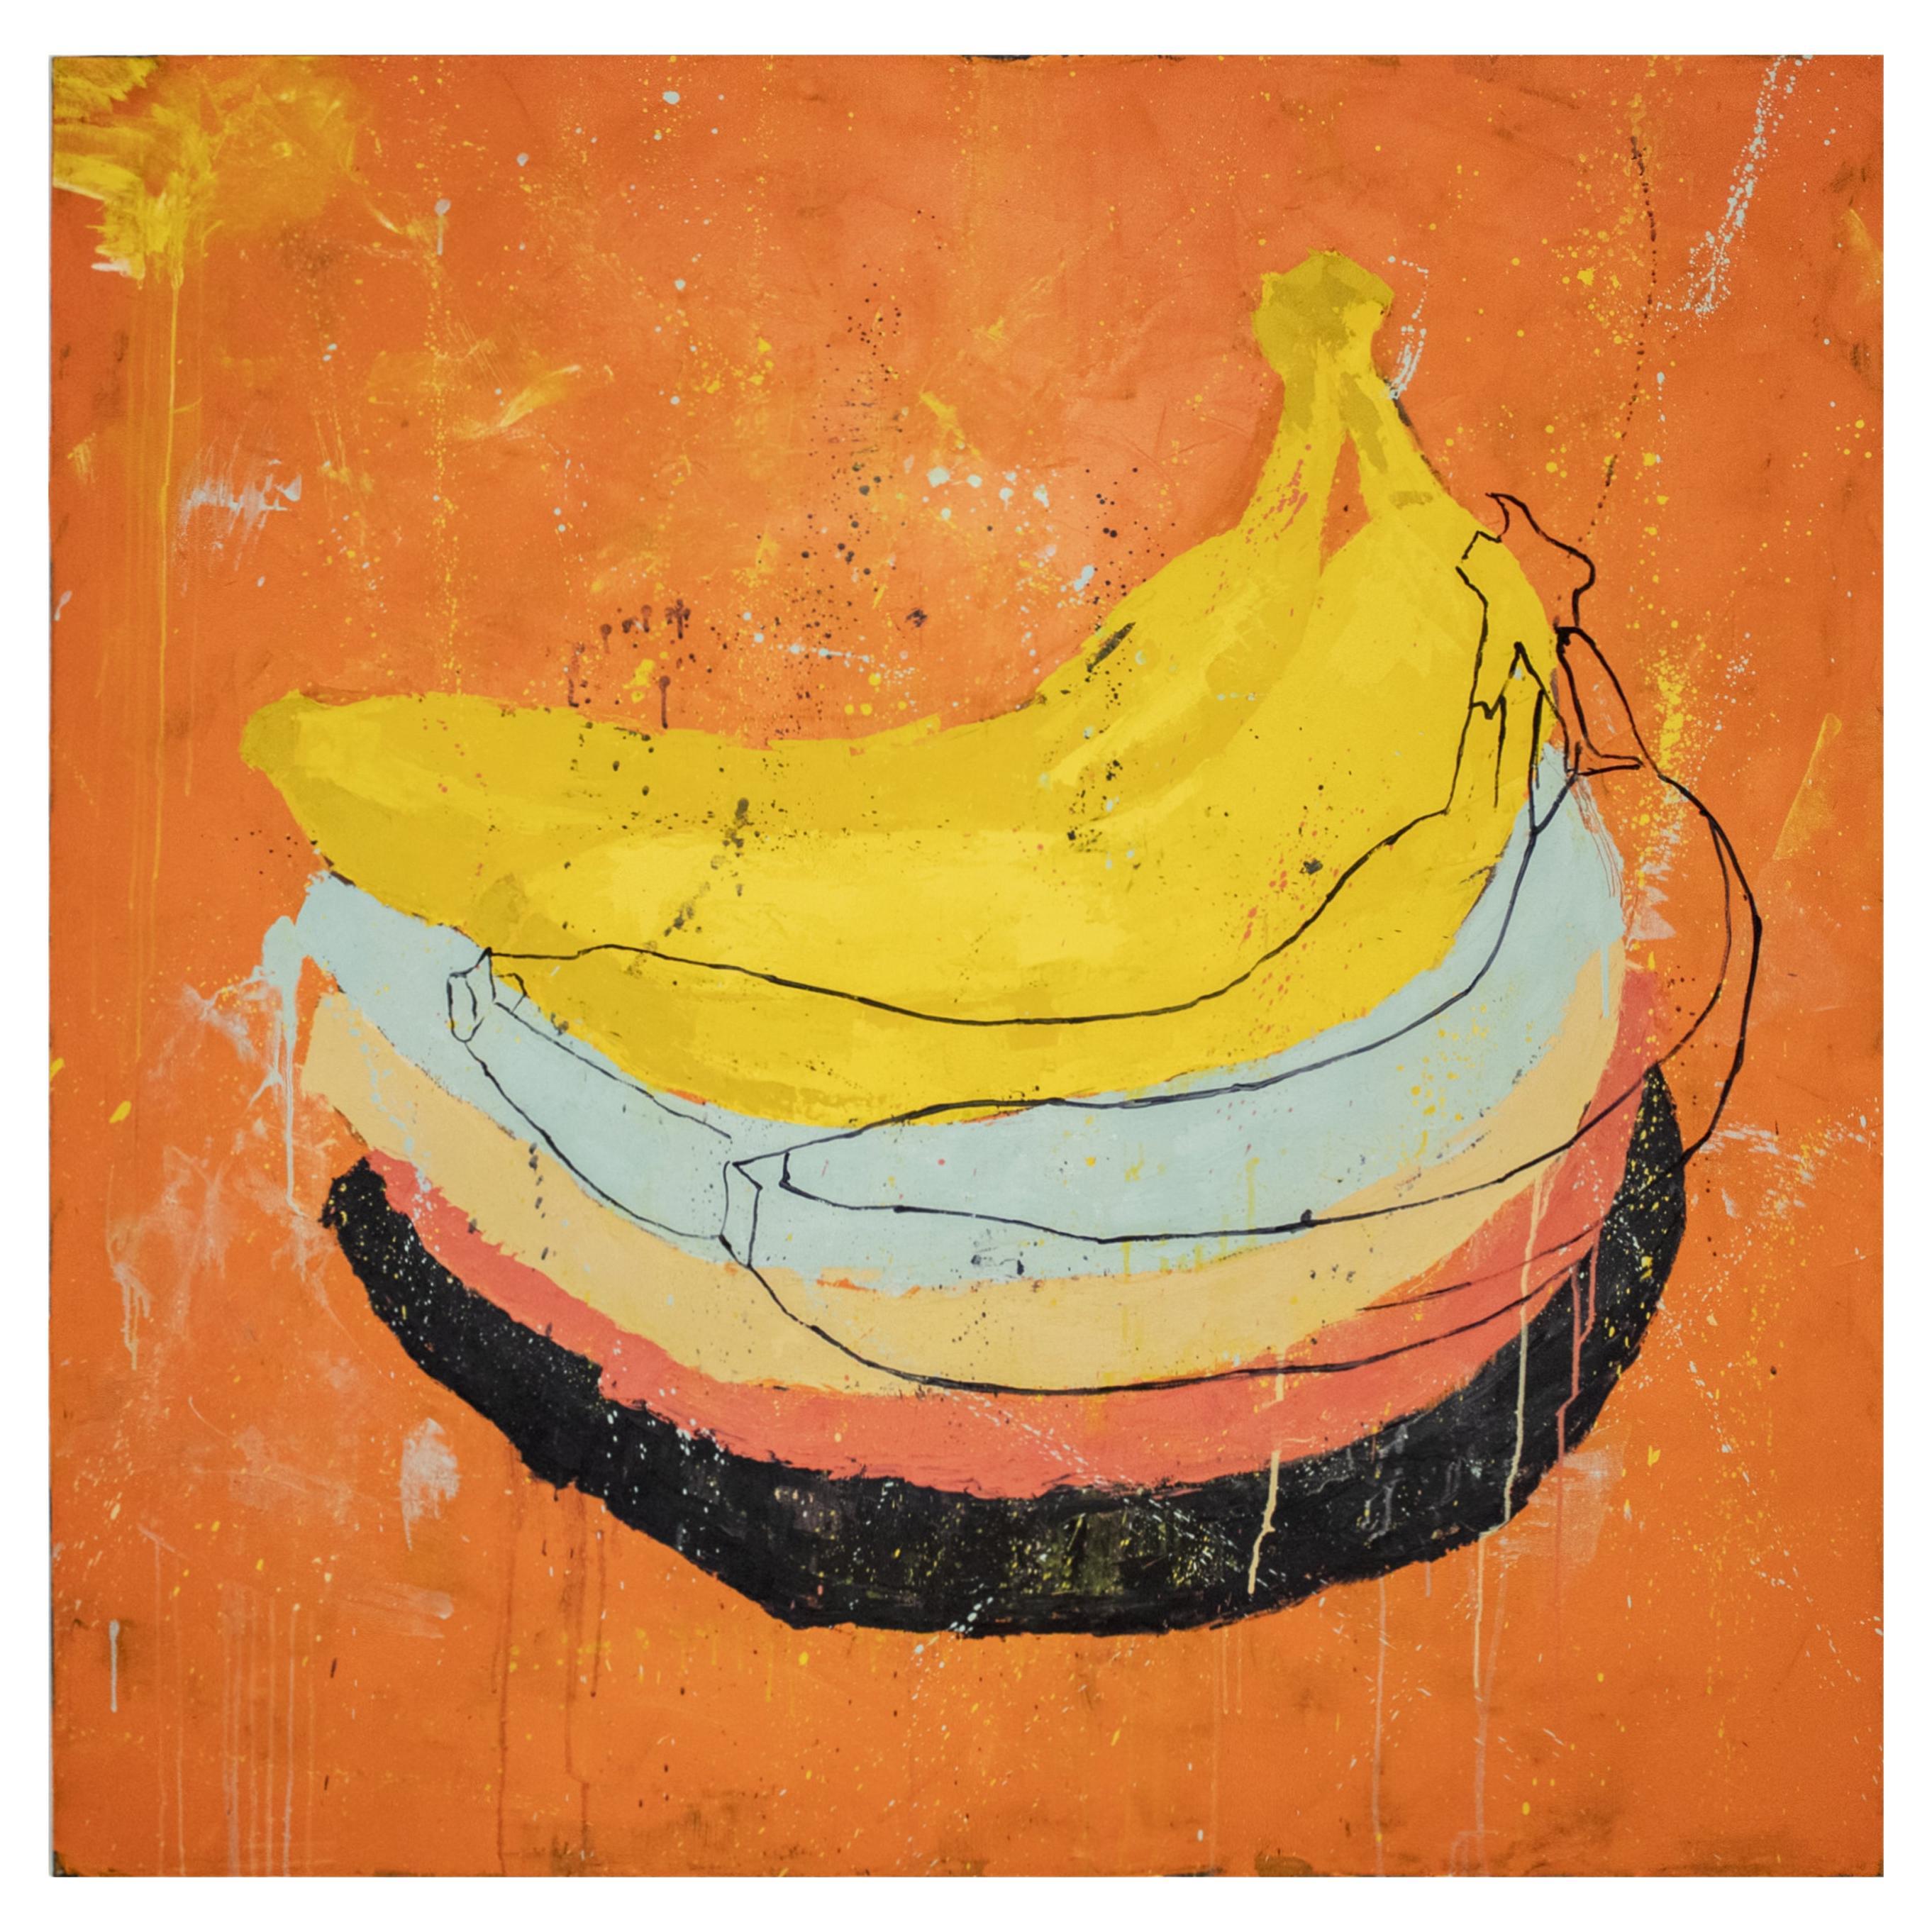 Contemporary Painting "The Banana" by Ana Laso, Spain, 2019